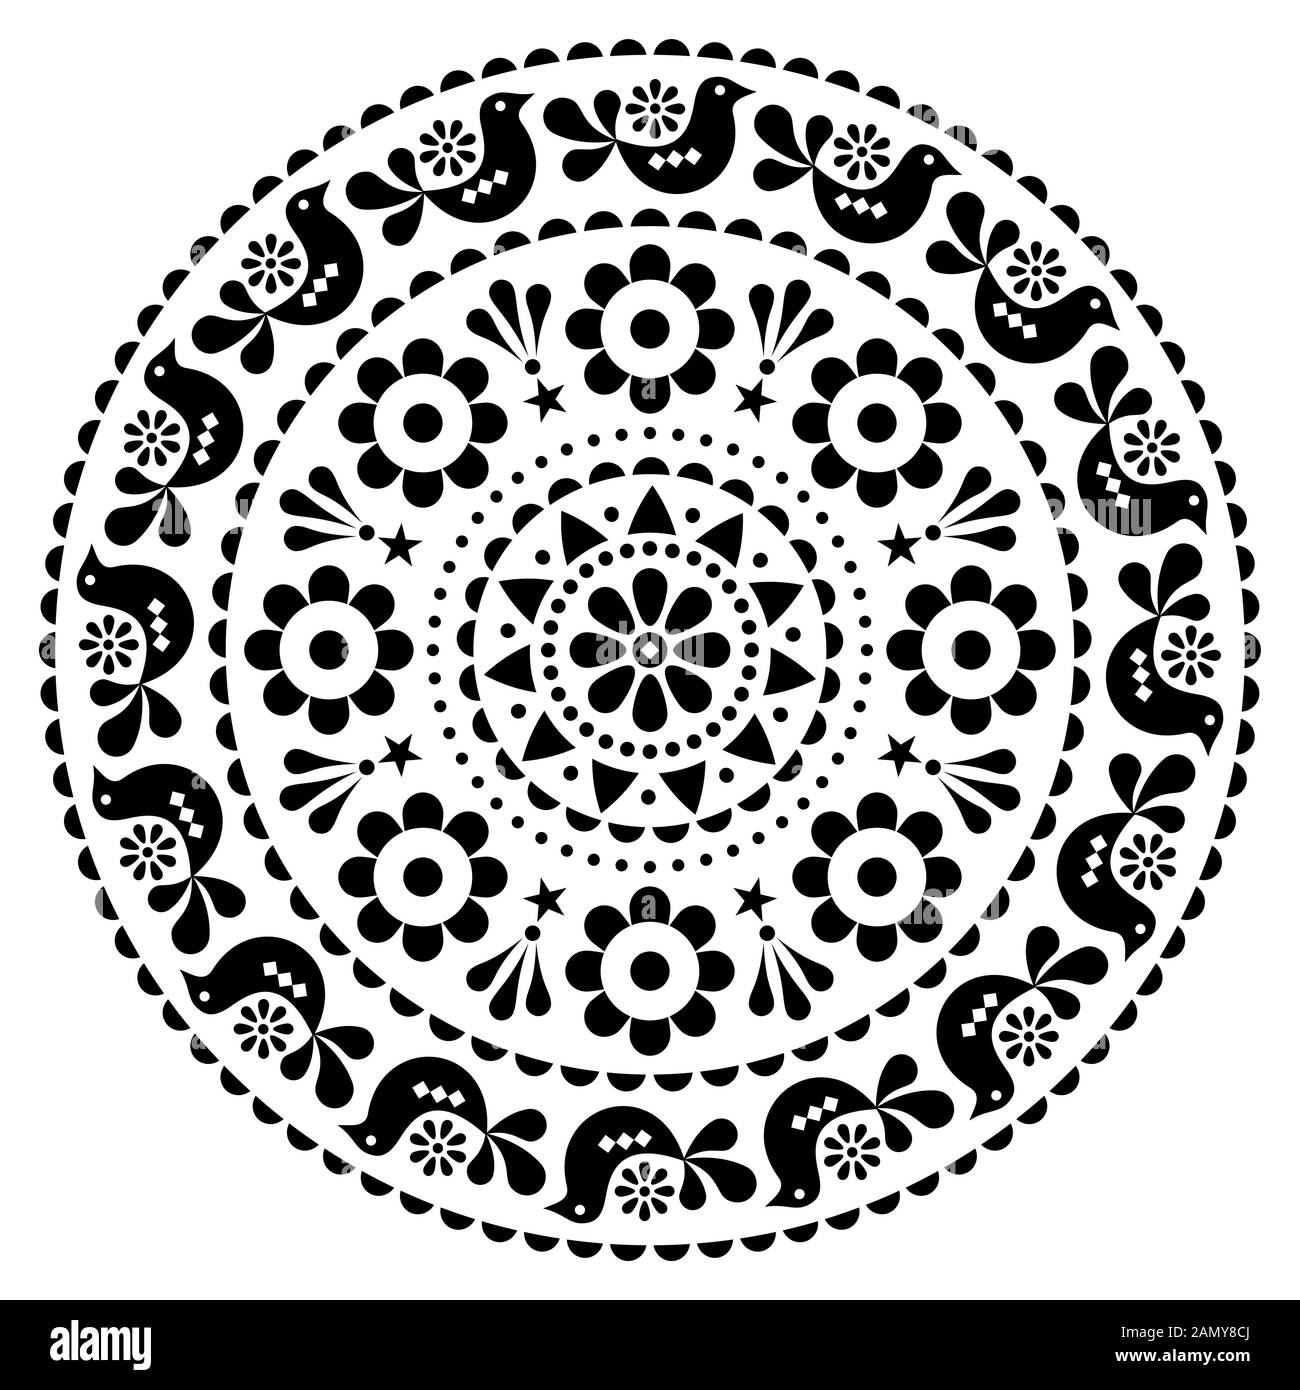 Skandinavisches, vektorgestaltiges Mandala-Muster - rundes Design, niedliches Blumenschmuck mit Vögeln in Schwarz auf weißem Hintergrund Stock Vektor